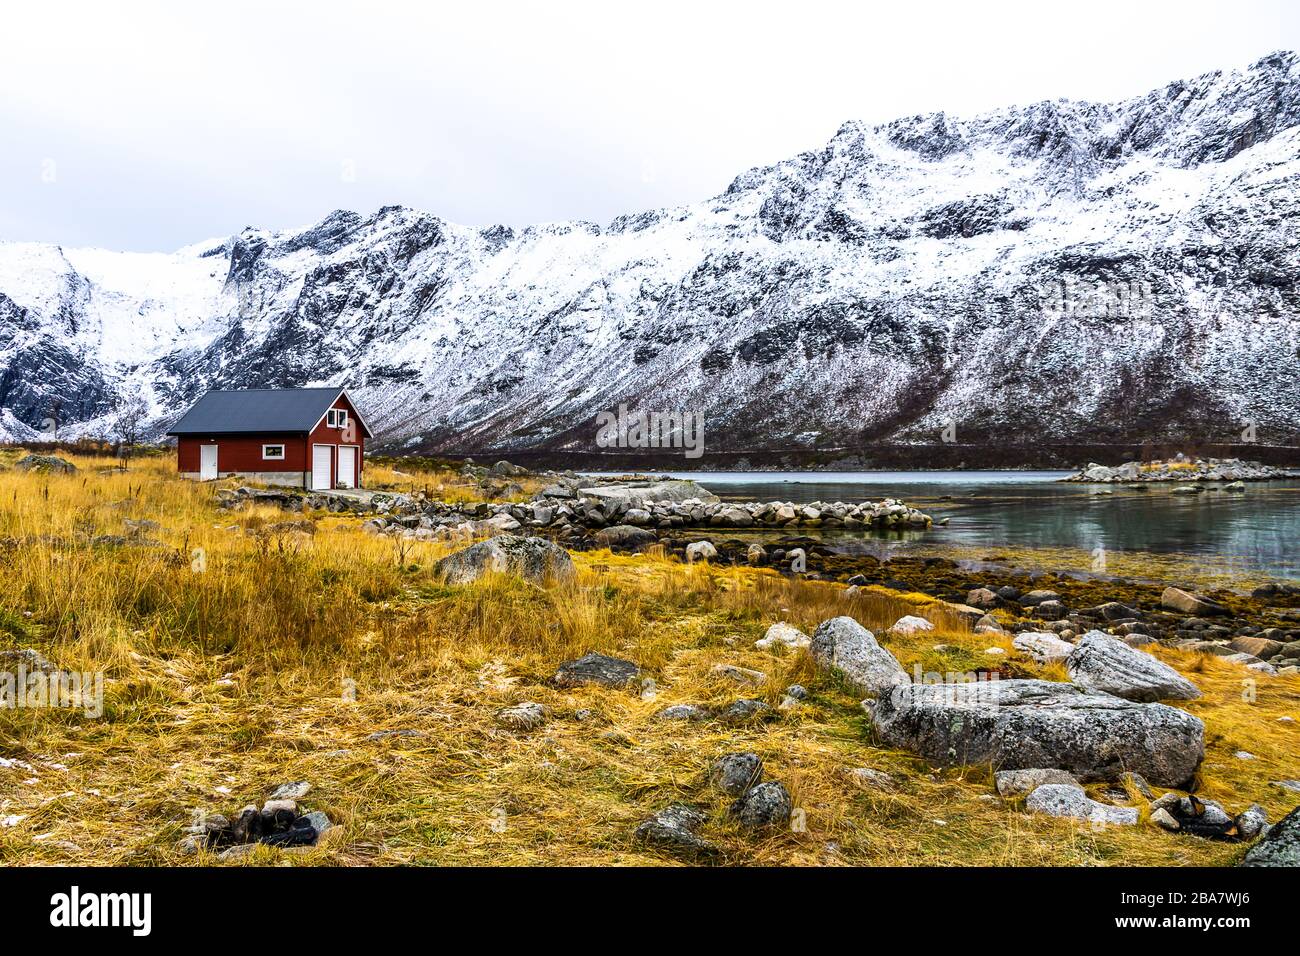 Norwegische landschaft aussicht hi-res stock photography and images - Alamy